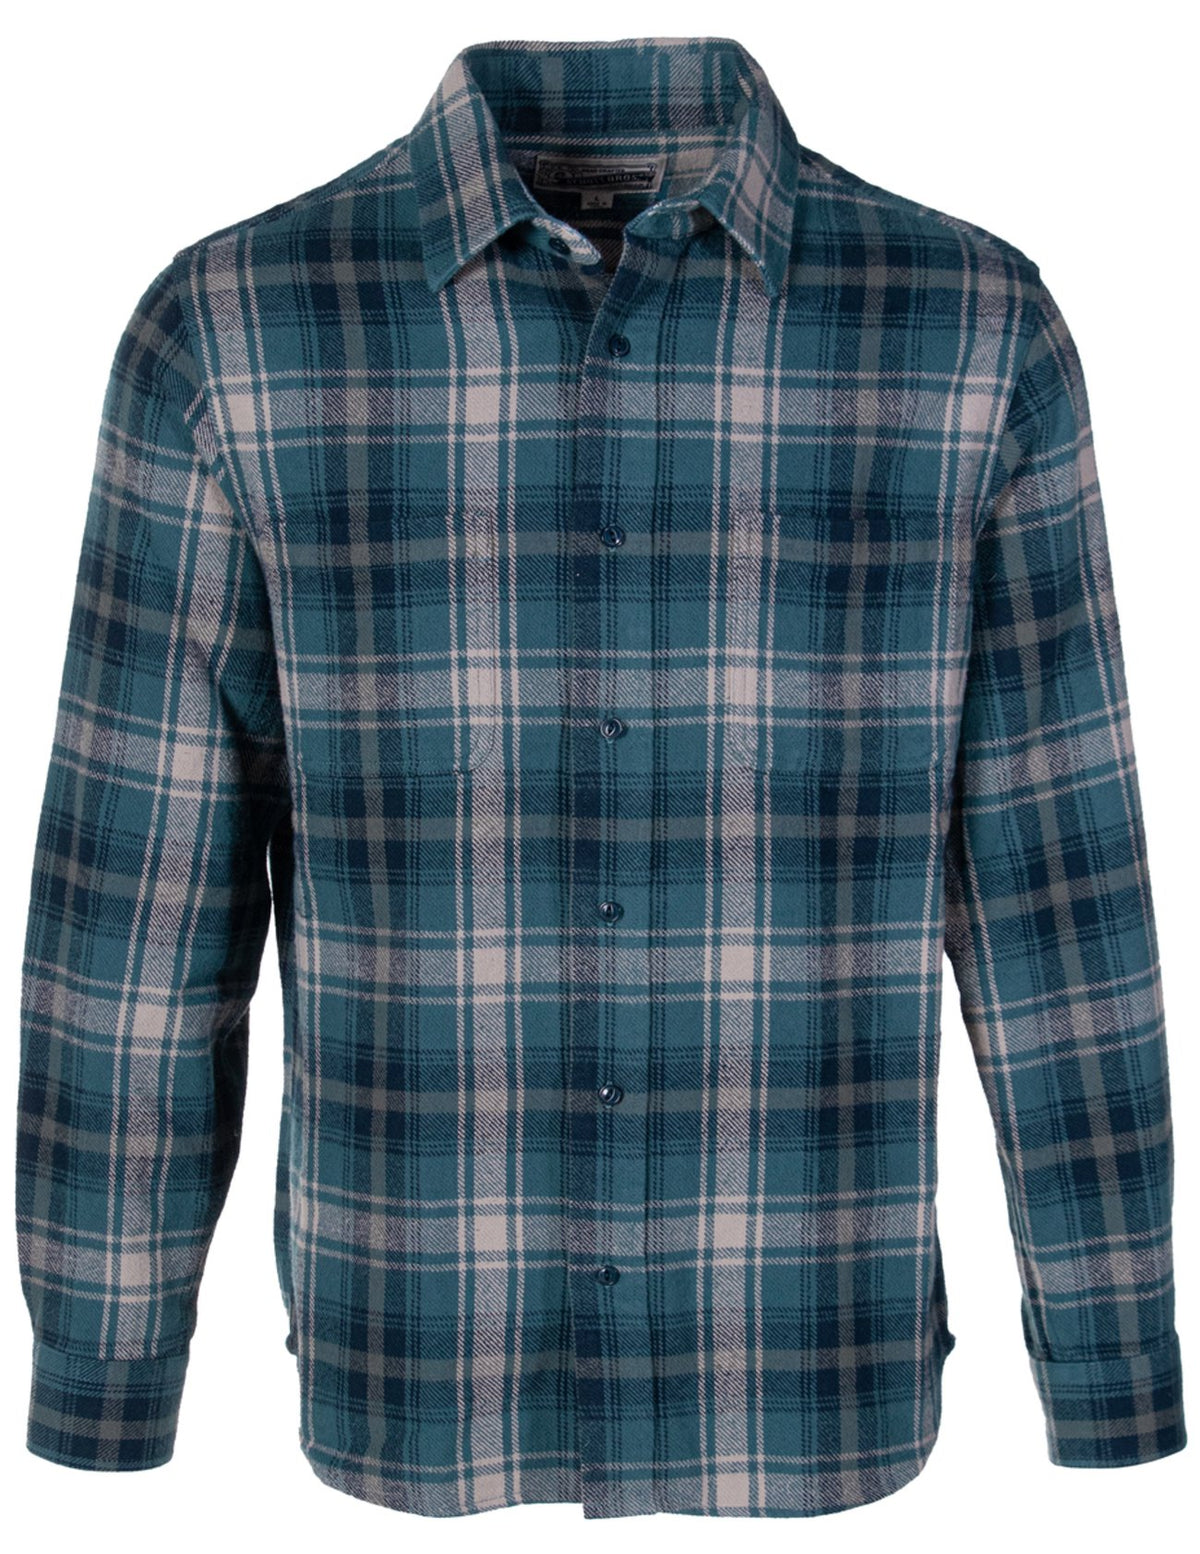 Schott NYC Cadet Plaid Cotton Flannel Shirt - Dudes Boutique